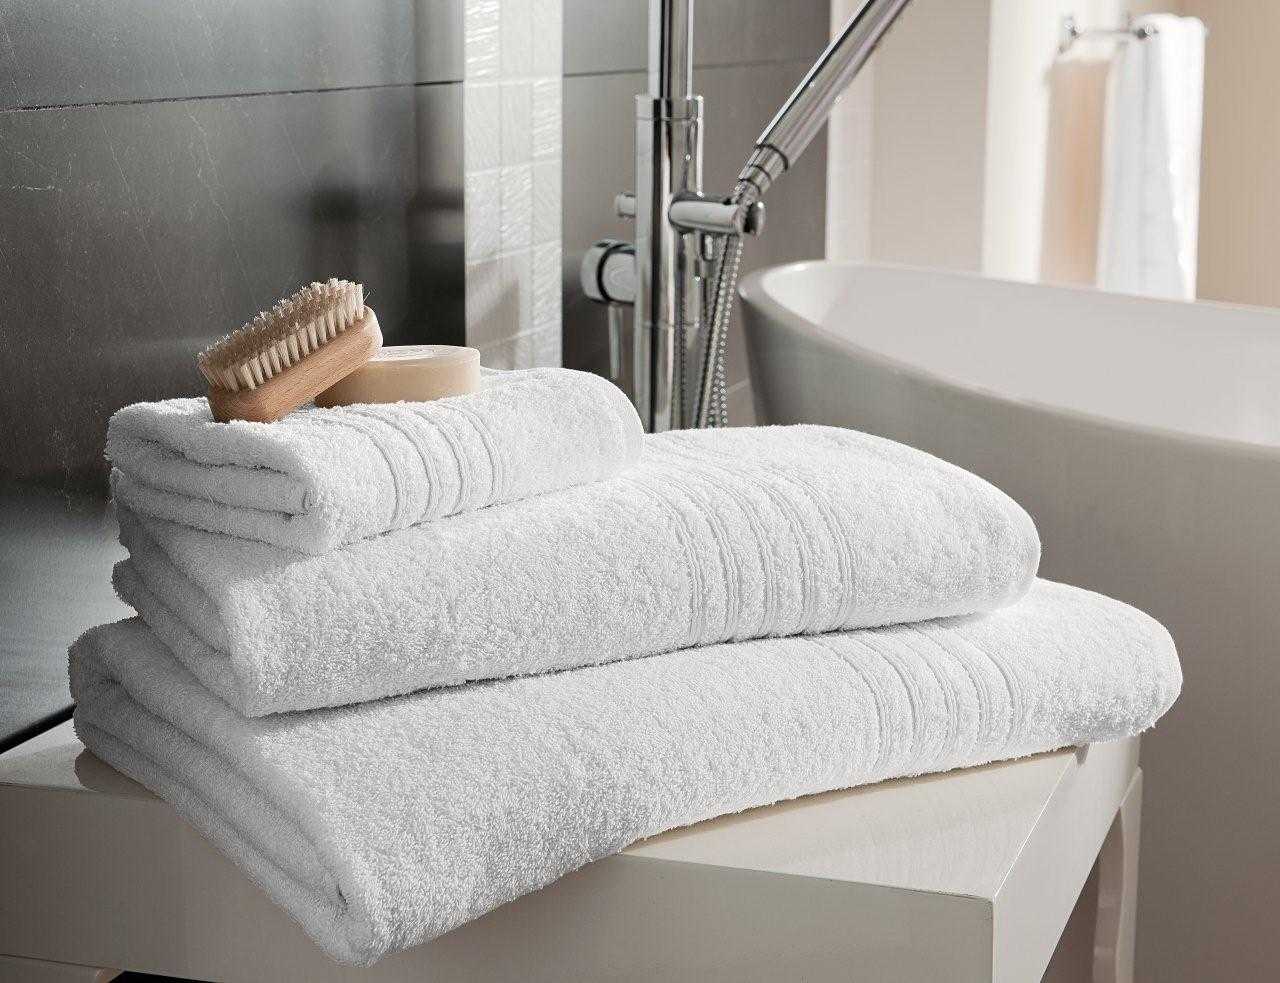 Как отбелить полотенце махровое?